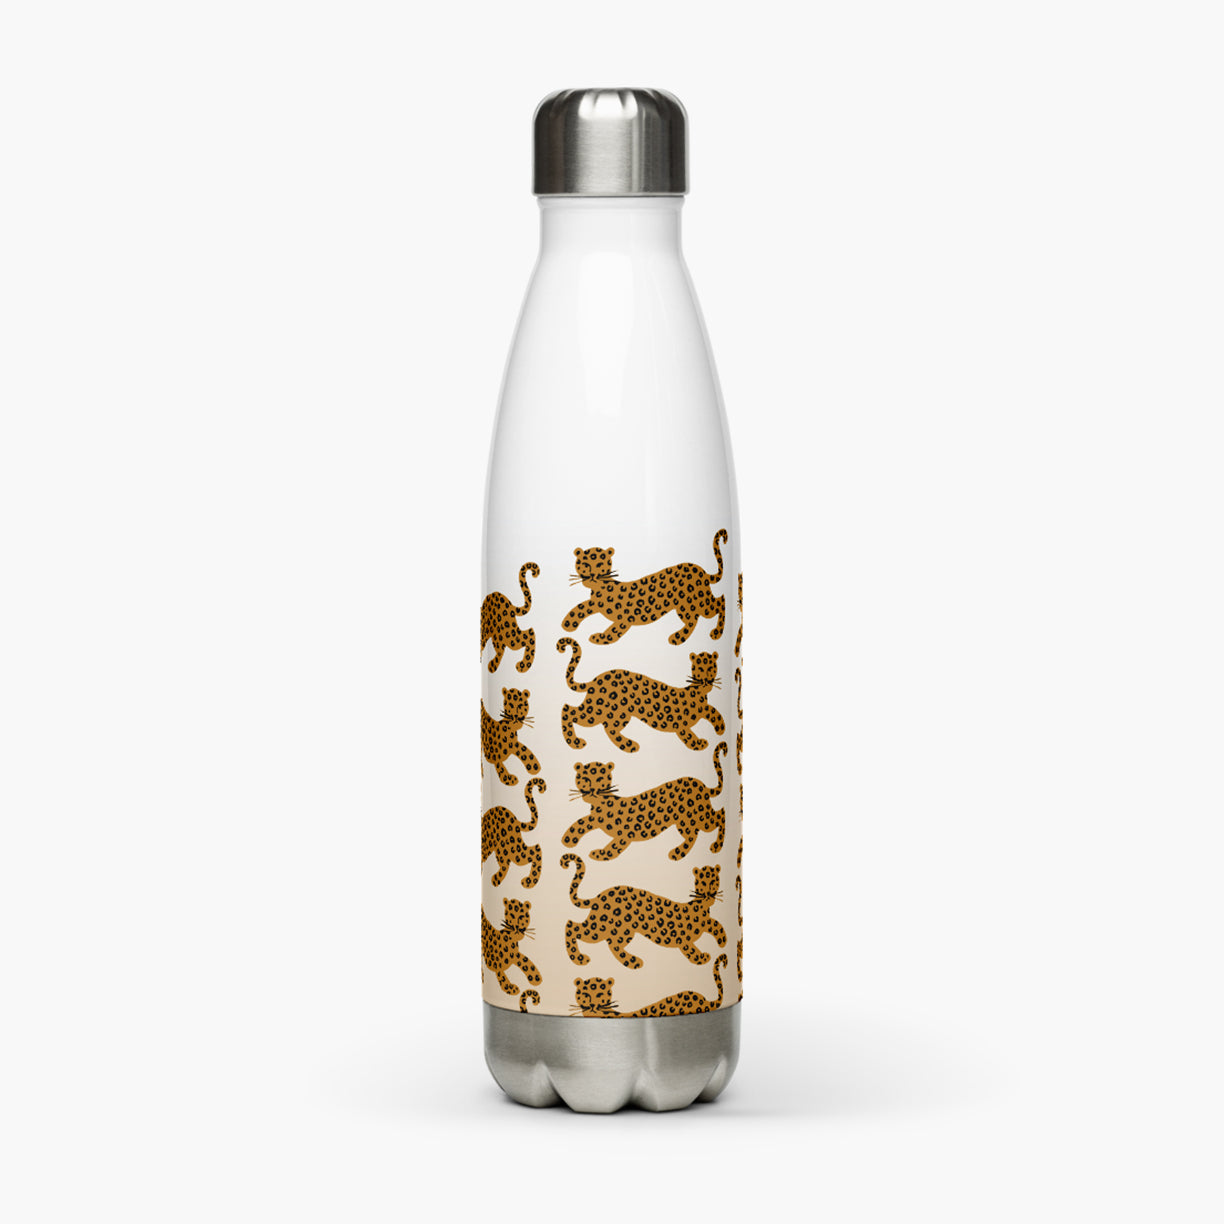 Panthera Water Bottle